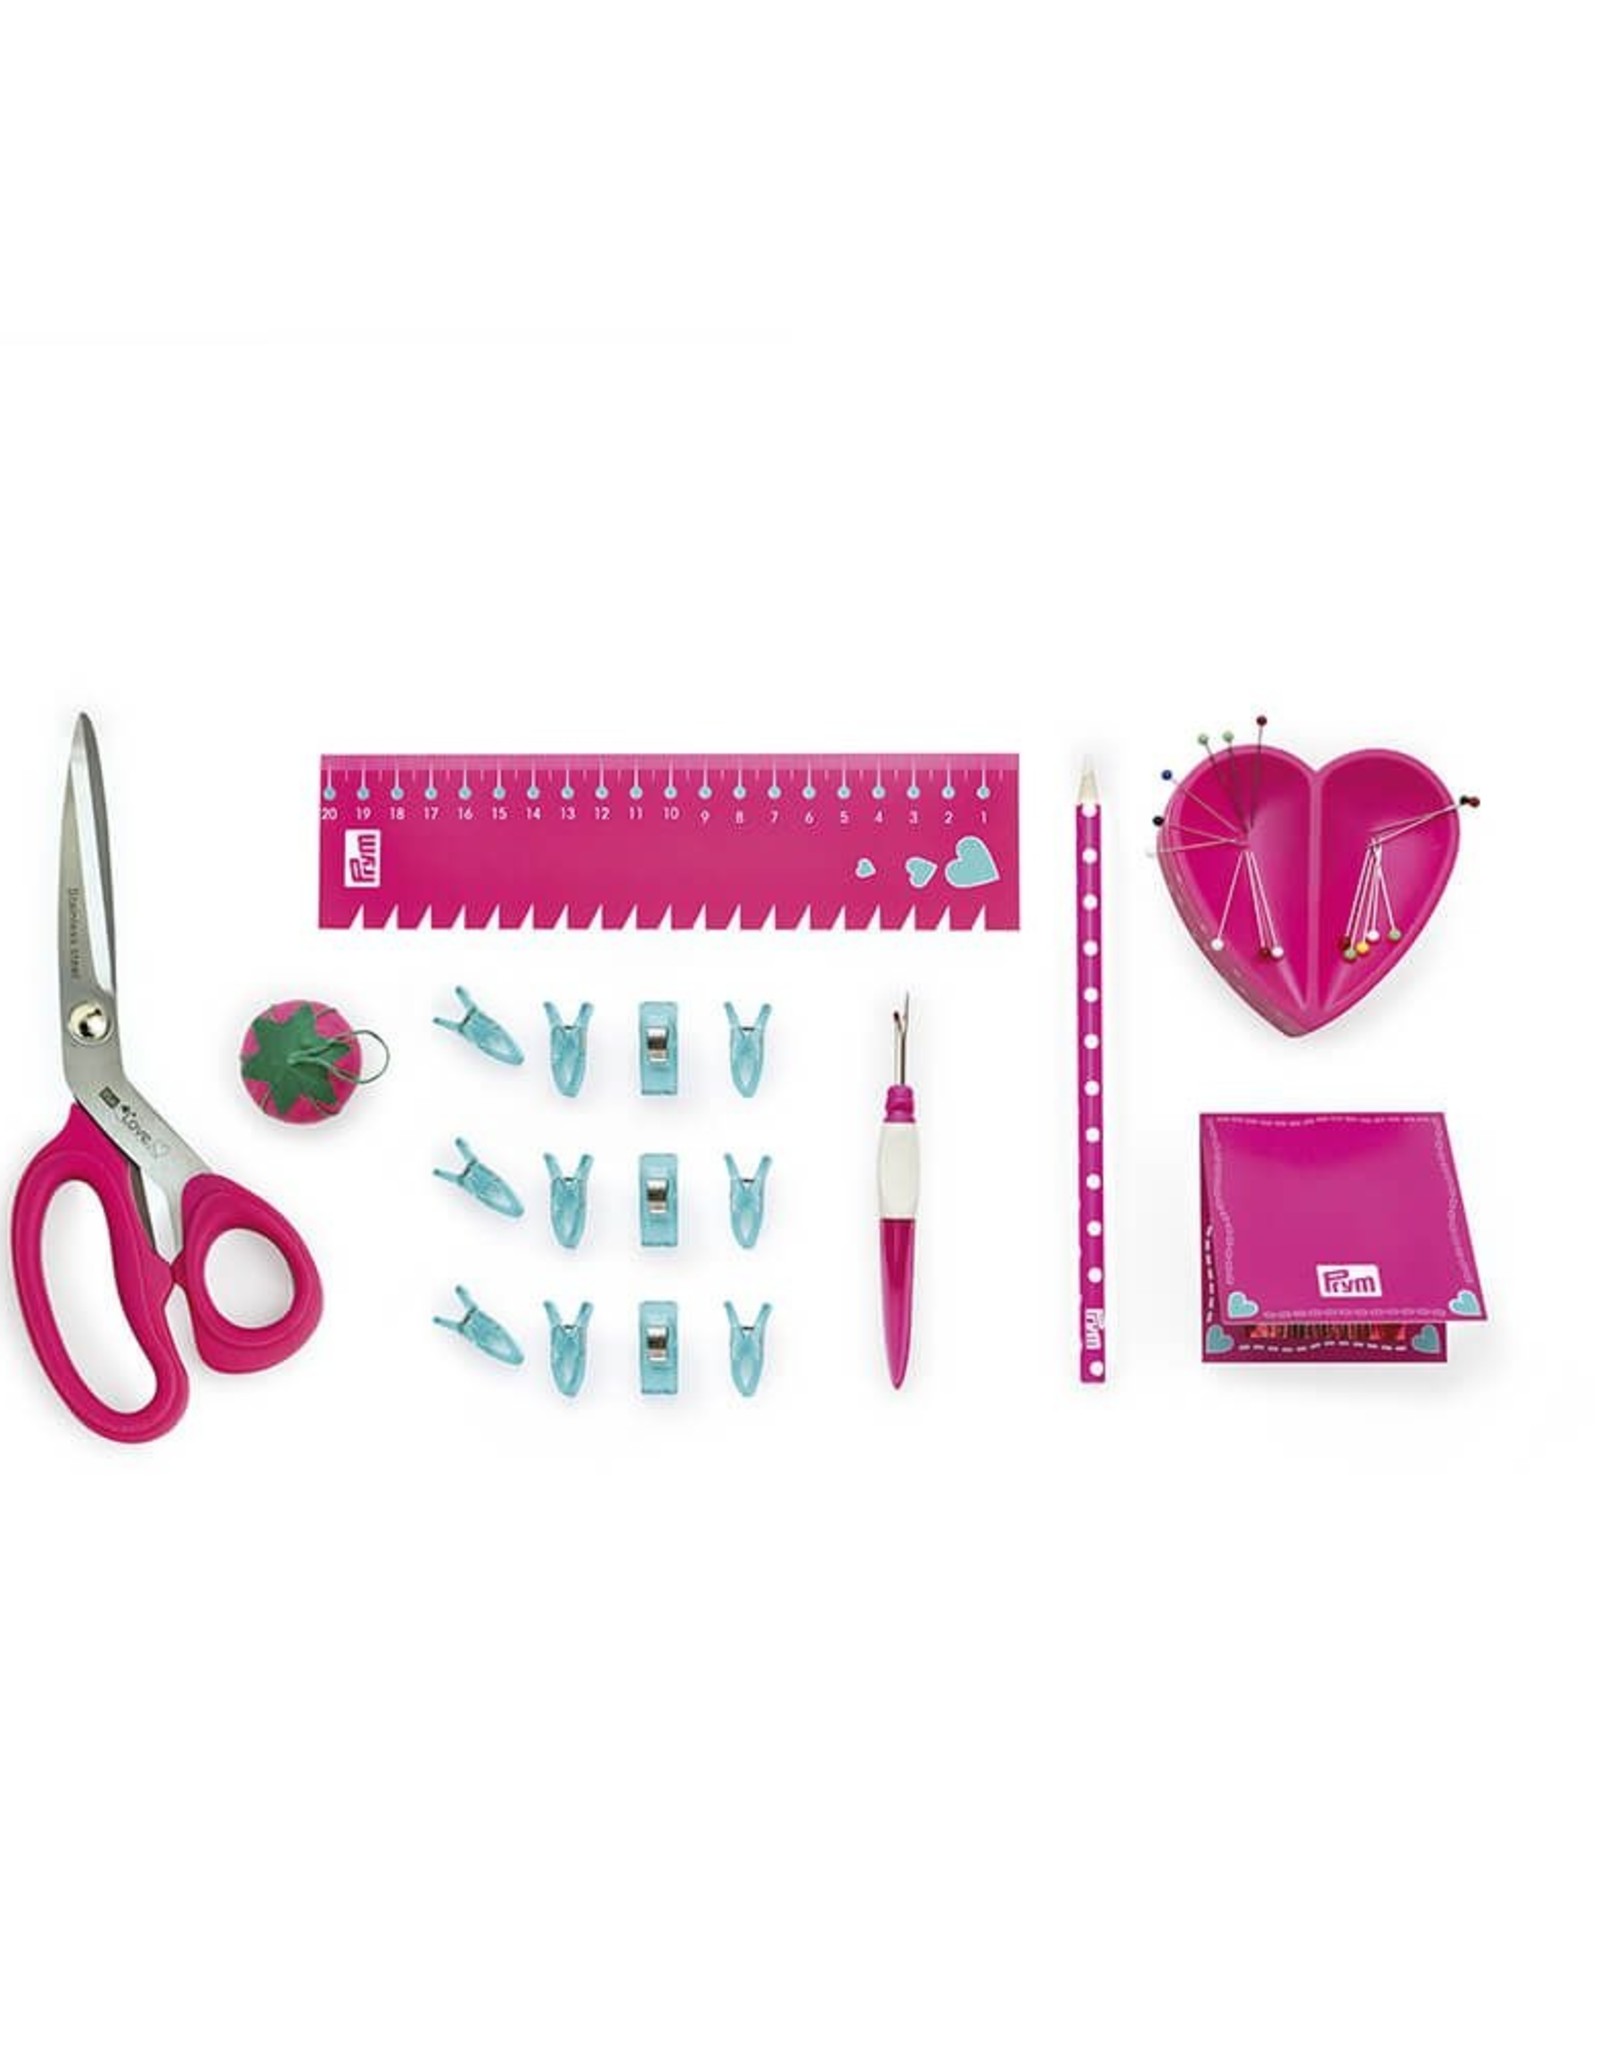 Prym Prym  - starter set 'sewing' Love rose - 651 223